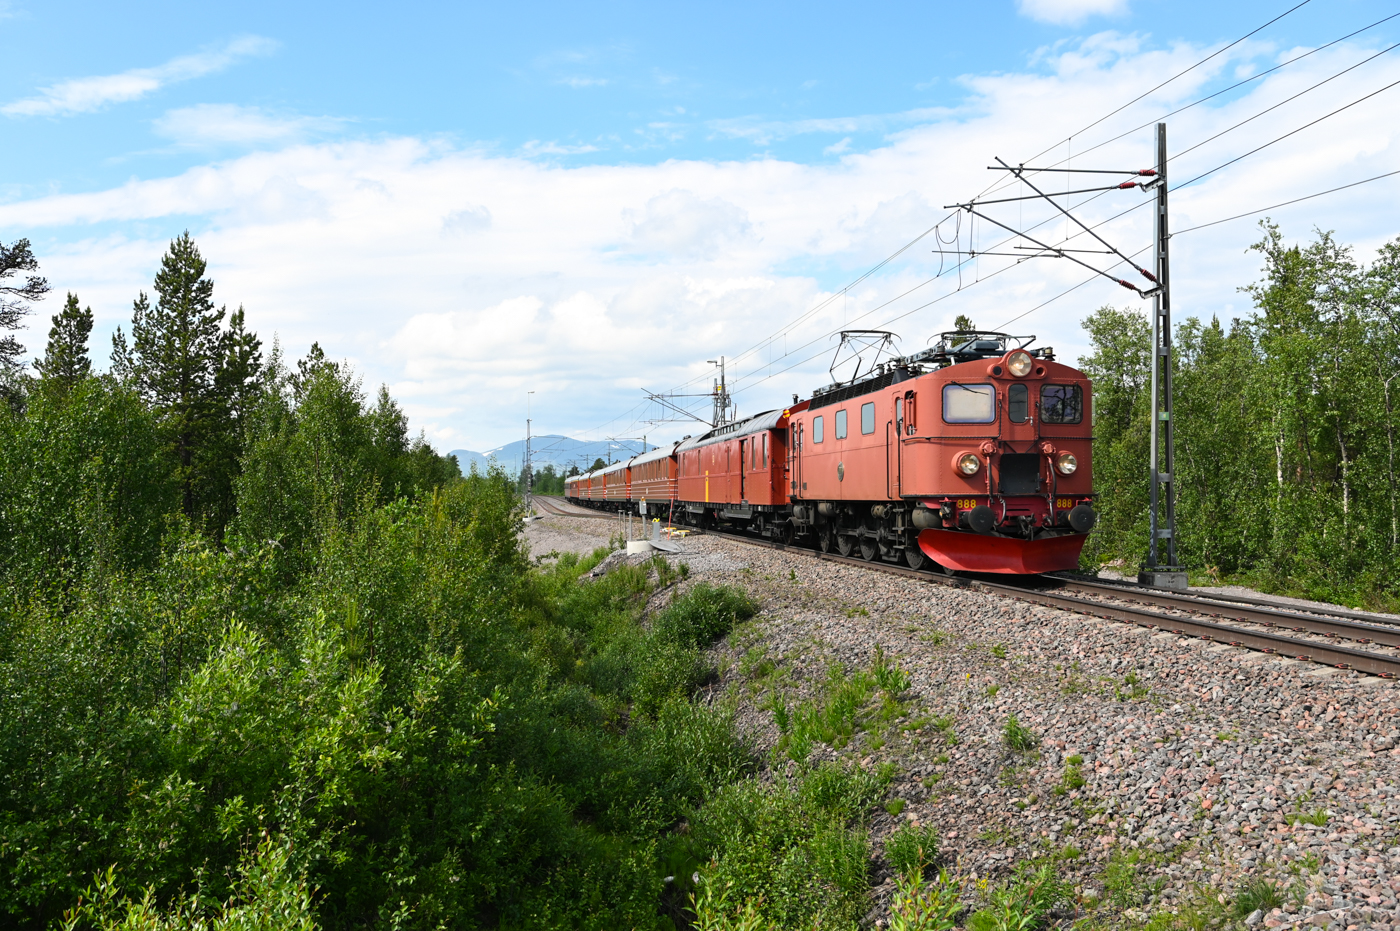 Während des Eisenbahnfestes in Kiruna gab es an drei Tagen sogenannte Dinnerzüge, welche von Kiruna nach Abisko und zurück verkehrten und in denen ein drei Gängemenü serviert wurde. Am 01.07.2022 ist die Da888 bei Rautas wieder in Richtung Kiruna unterwegs.